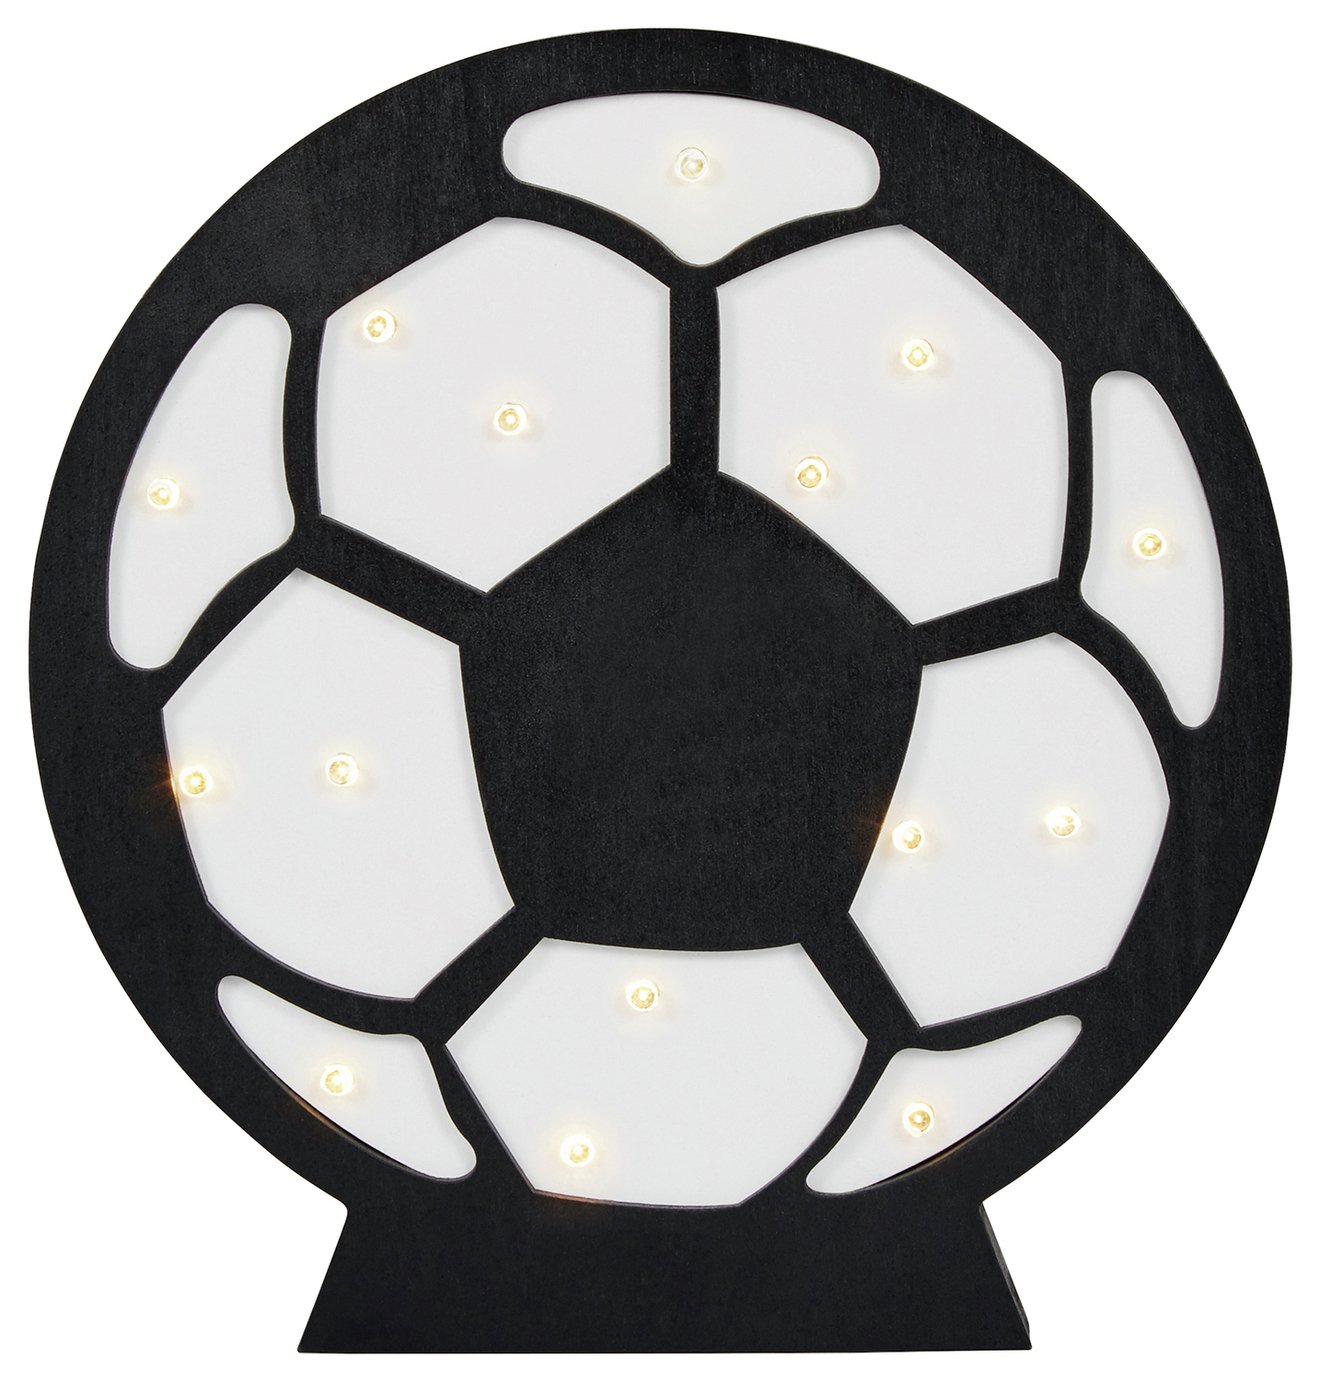 Glow Kids Wooden Football LED Table Light - Black & White